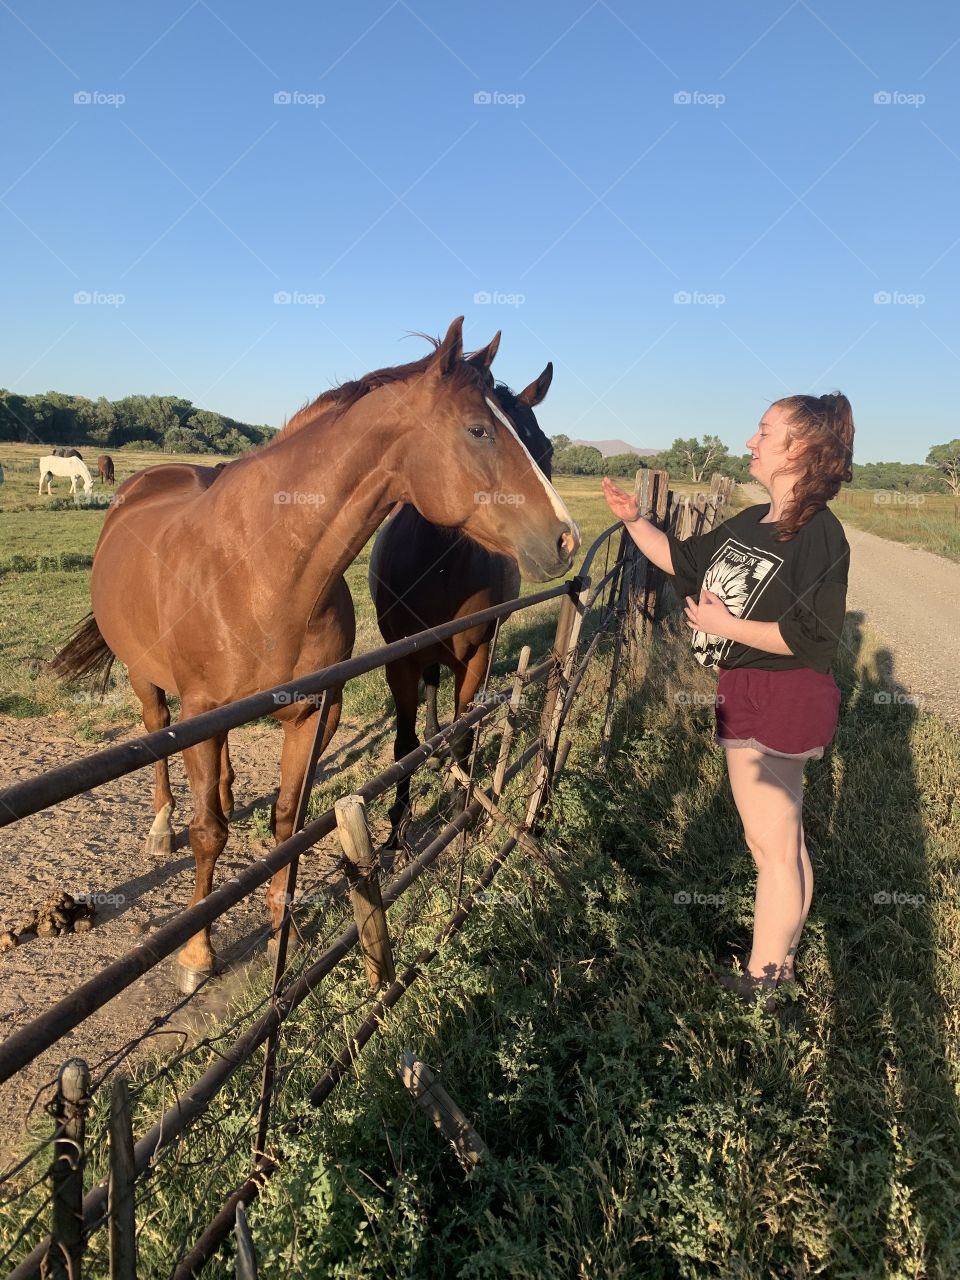 Girl feeding carrots to horses